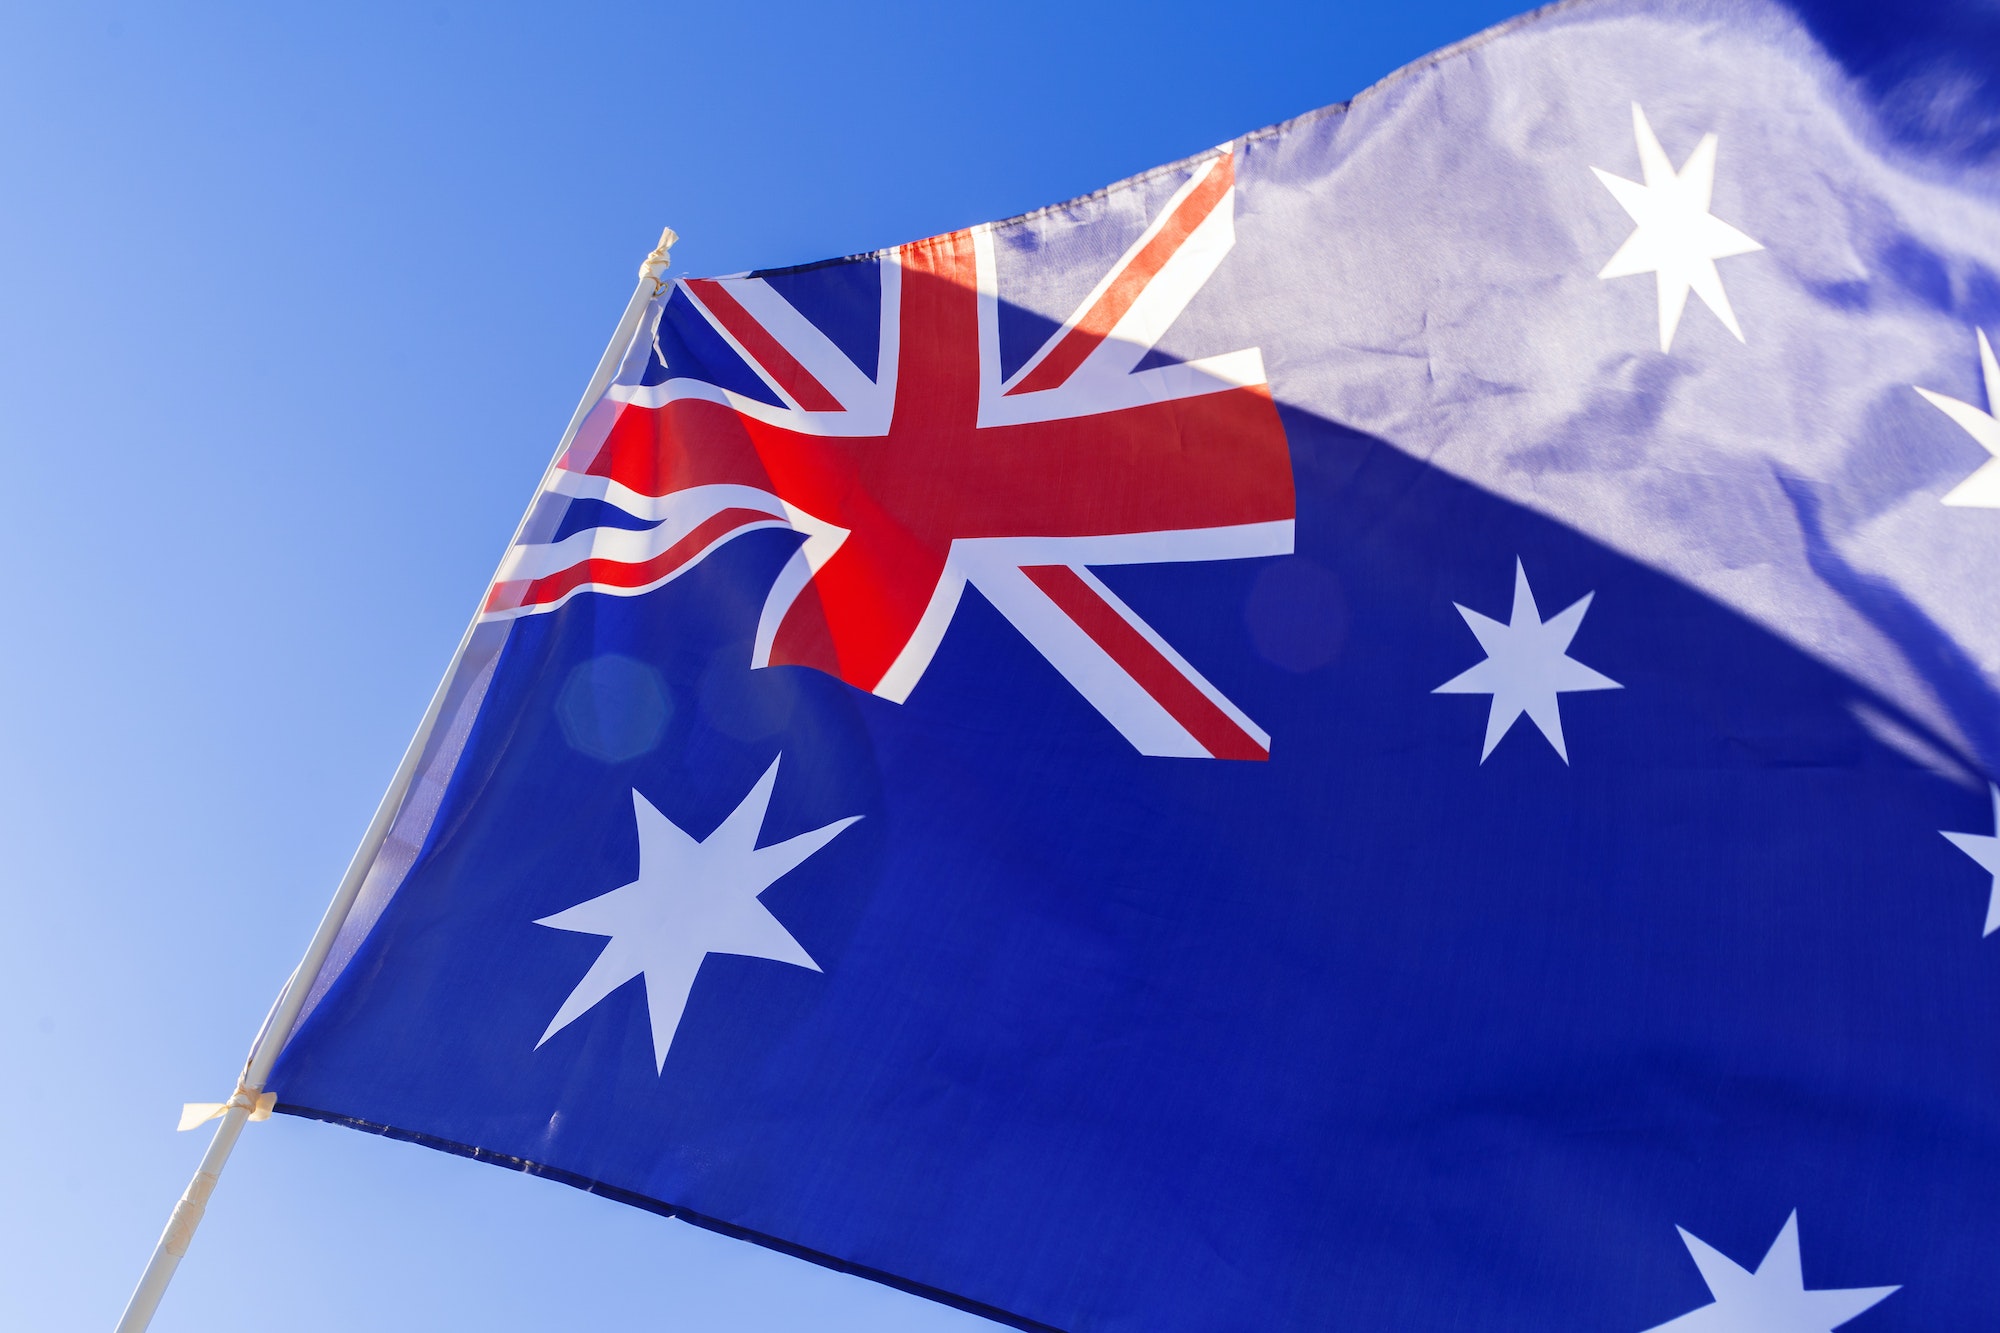 Flag of Australia waving against blue sky